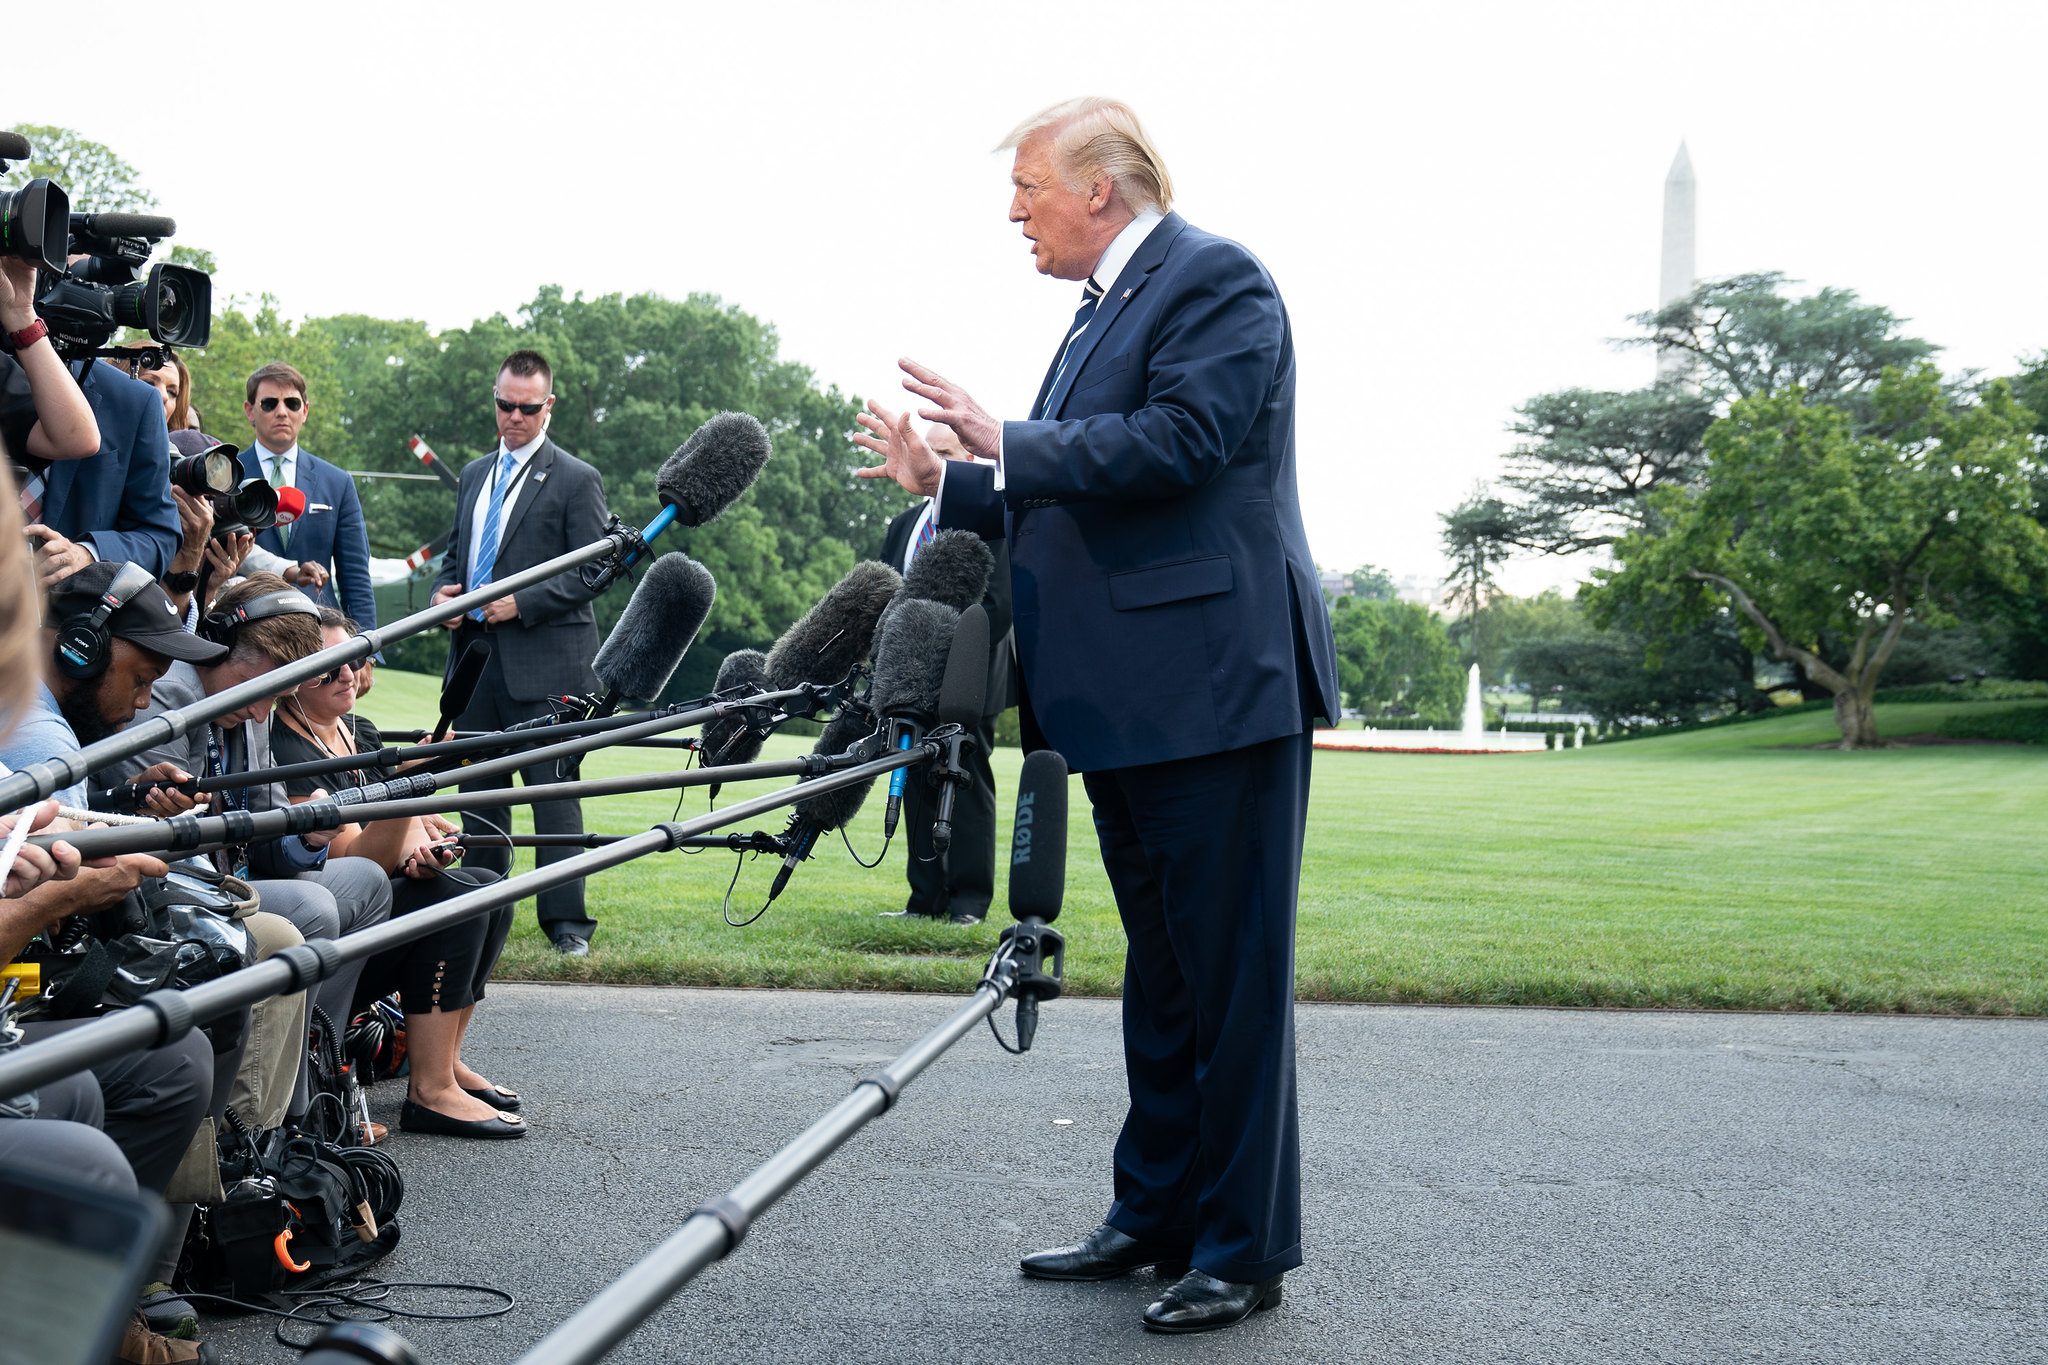 Trump habla con los periodistas en el jardín de la Casa Blanca. Foto: Flickr / The White House